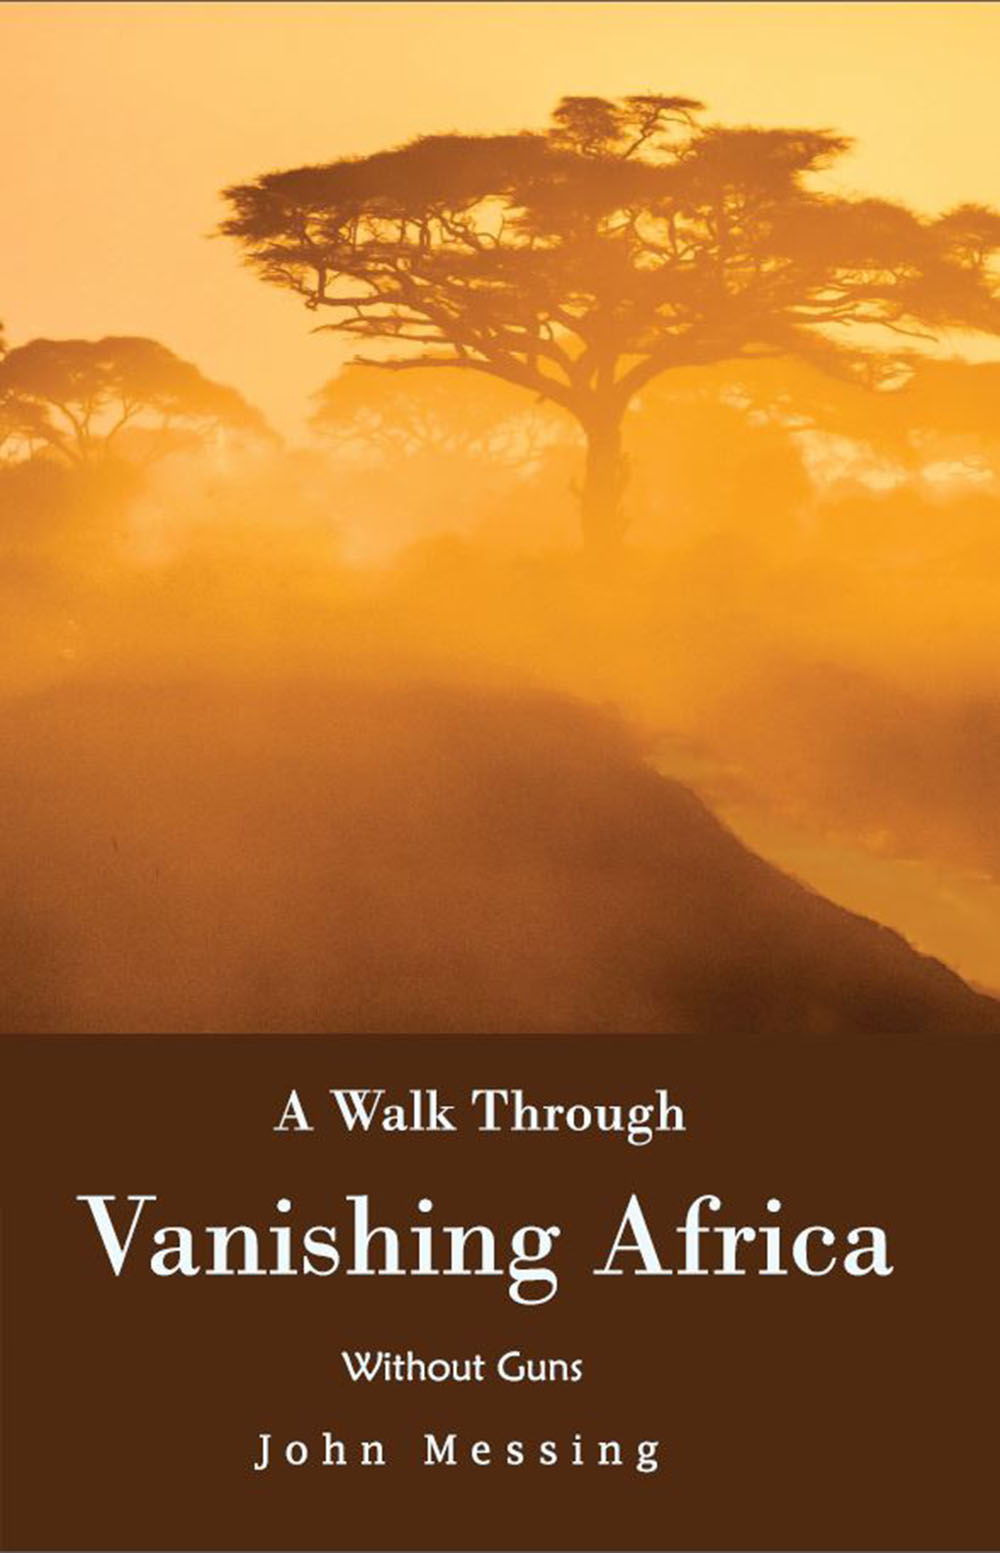 Vanishing-Africa-Book-Cover.JPG